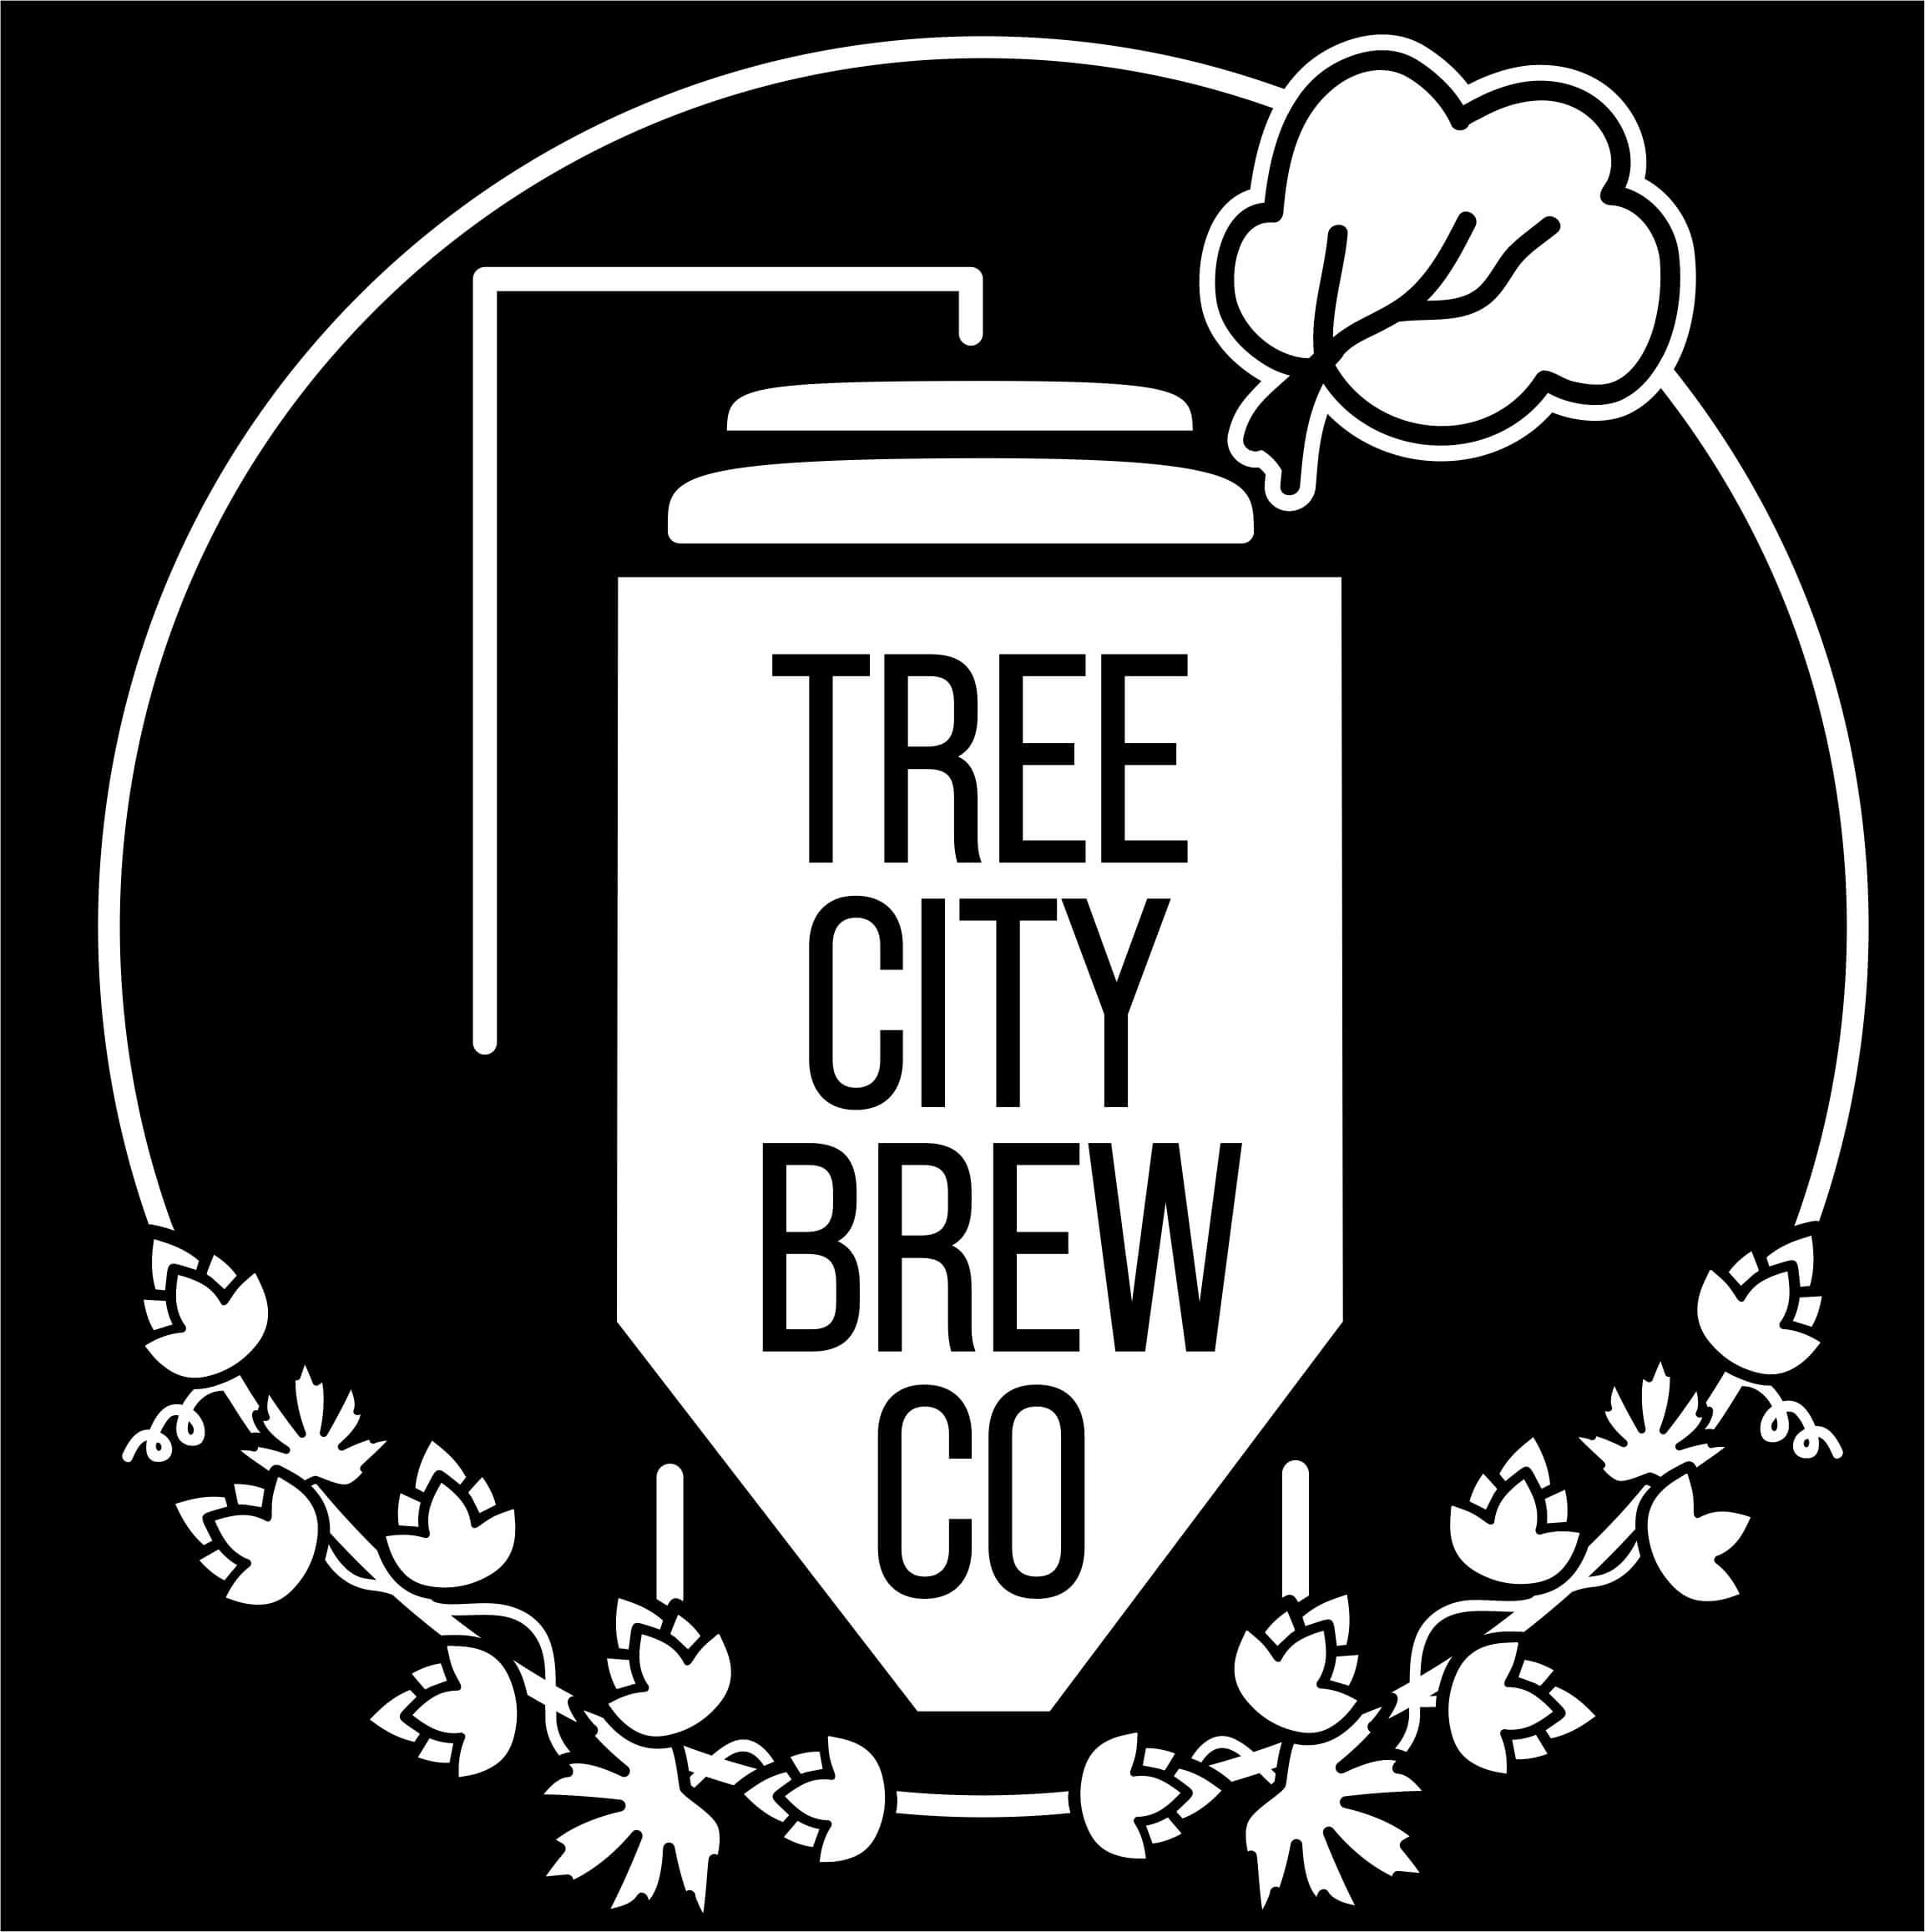 Tree City Brew Co. Logo